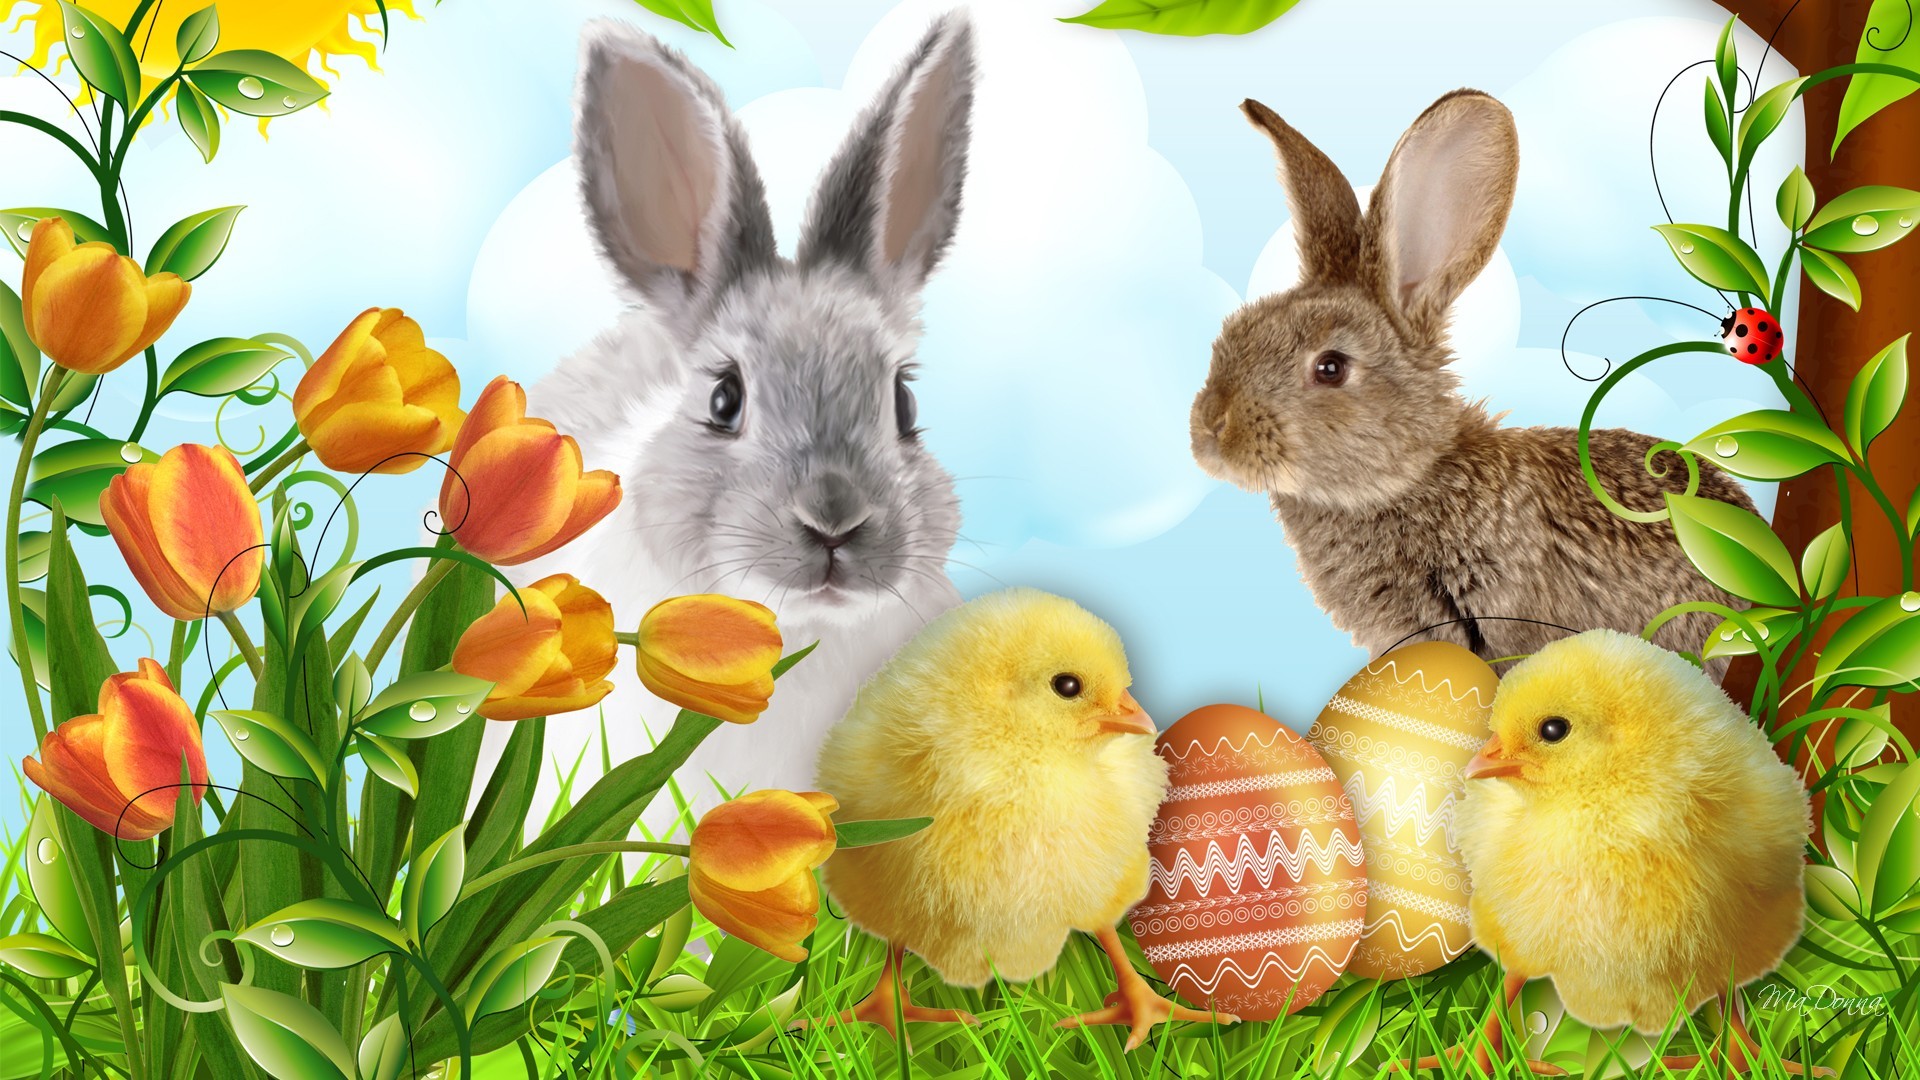 Beautiful Easter Desktop Wallpaper Image